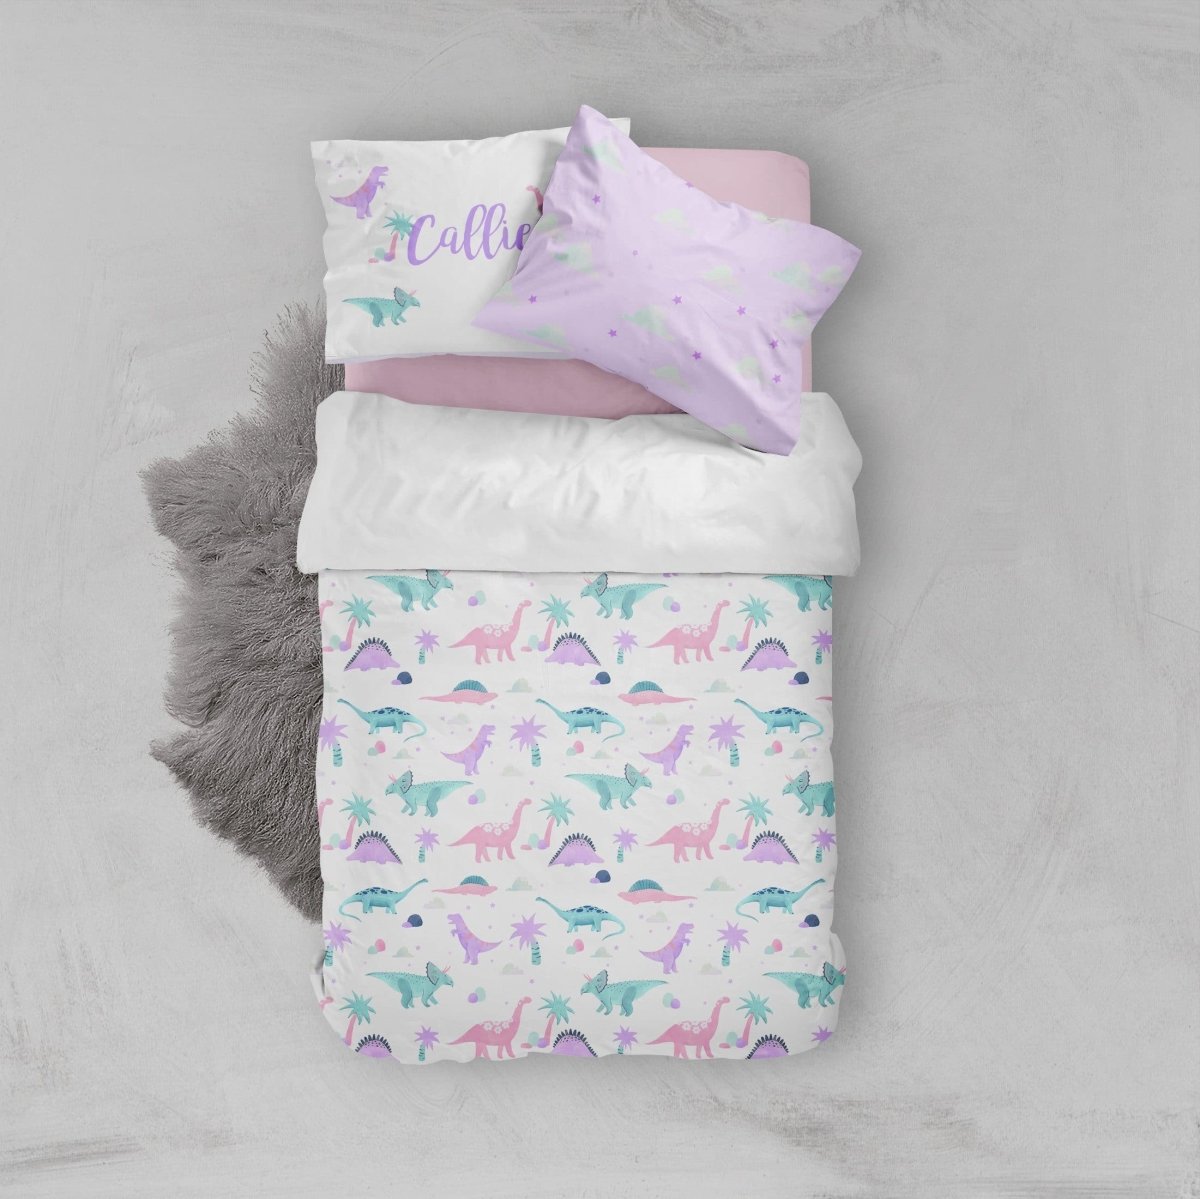 Dino Grrrl Kids Bedding Set (Comforter or Duvet Cover) - Dino Grrrl, gender_girl, text